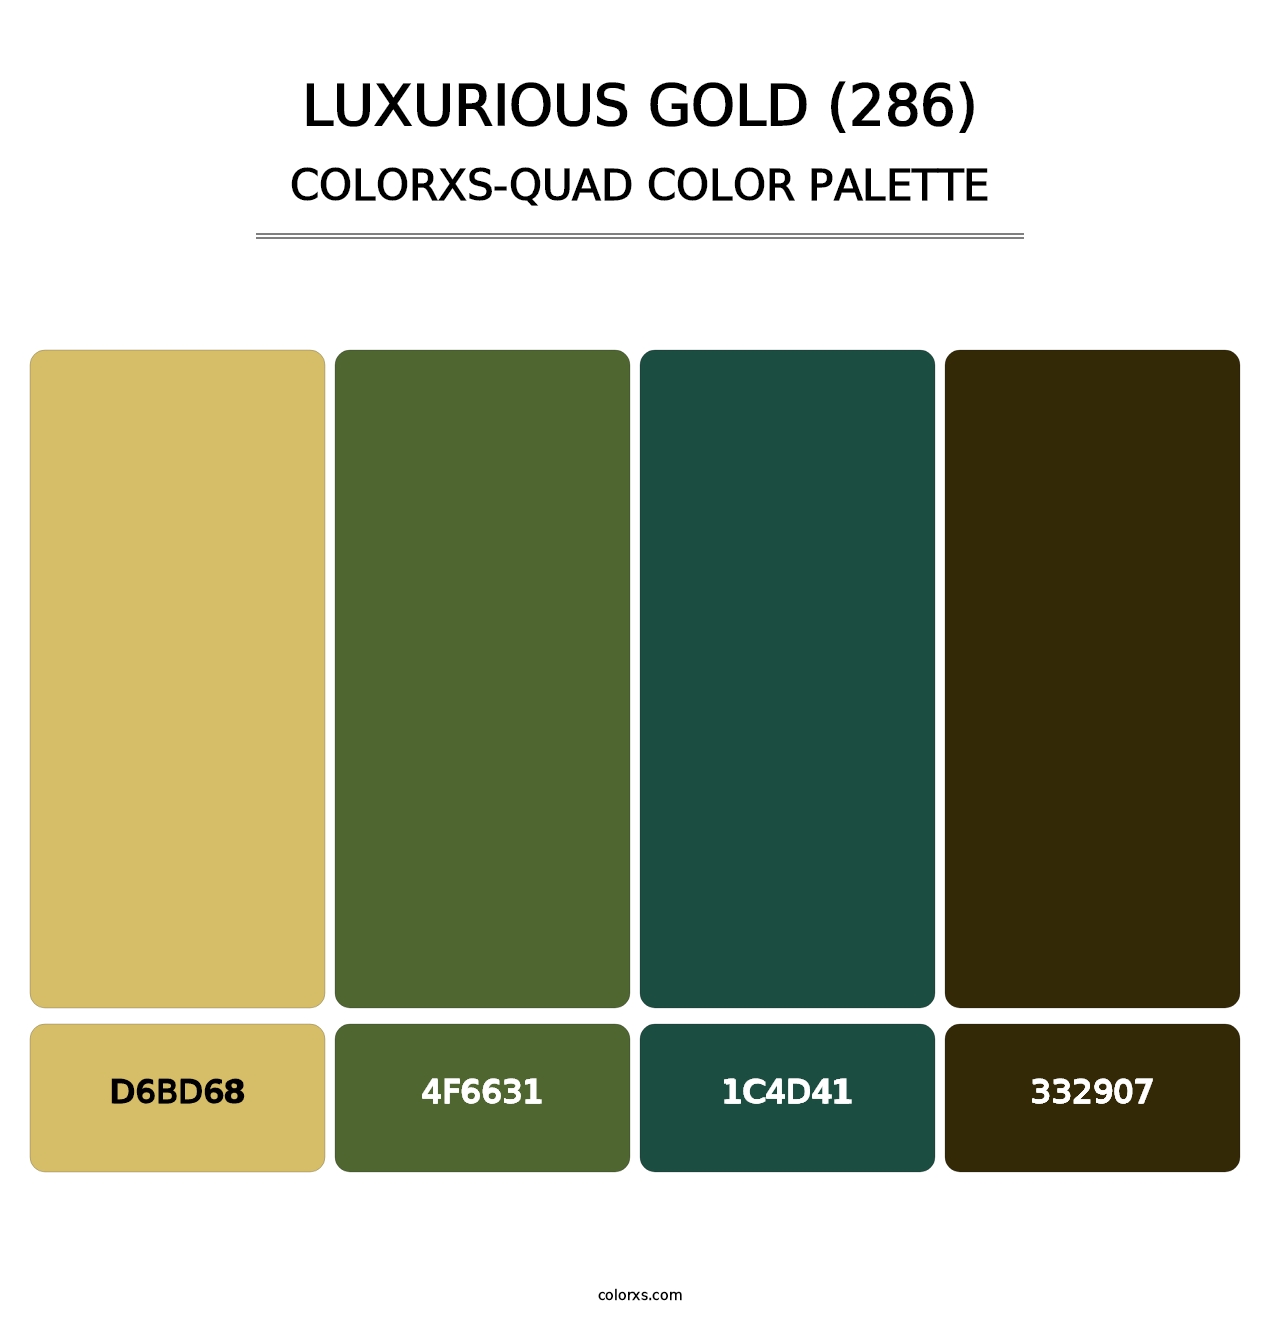 Luxurious Gold (286) - Colorxs Quad Palette